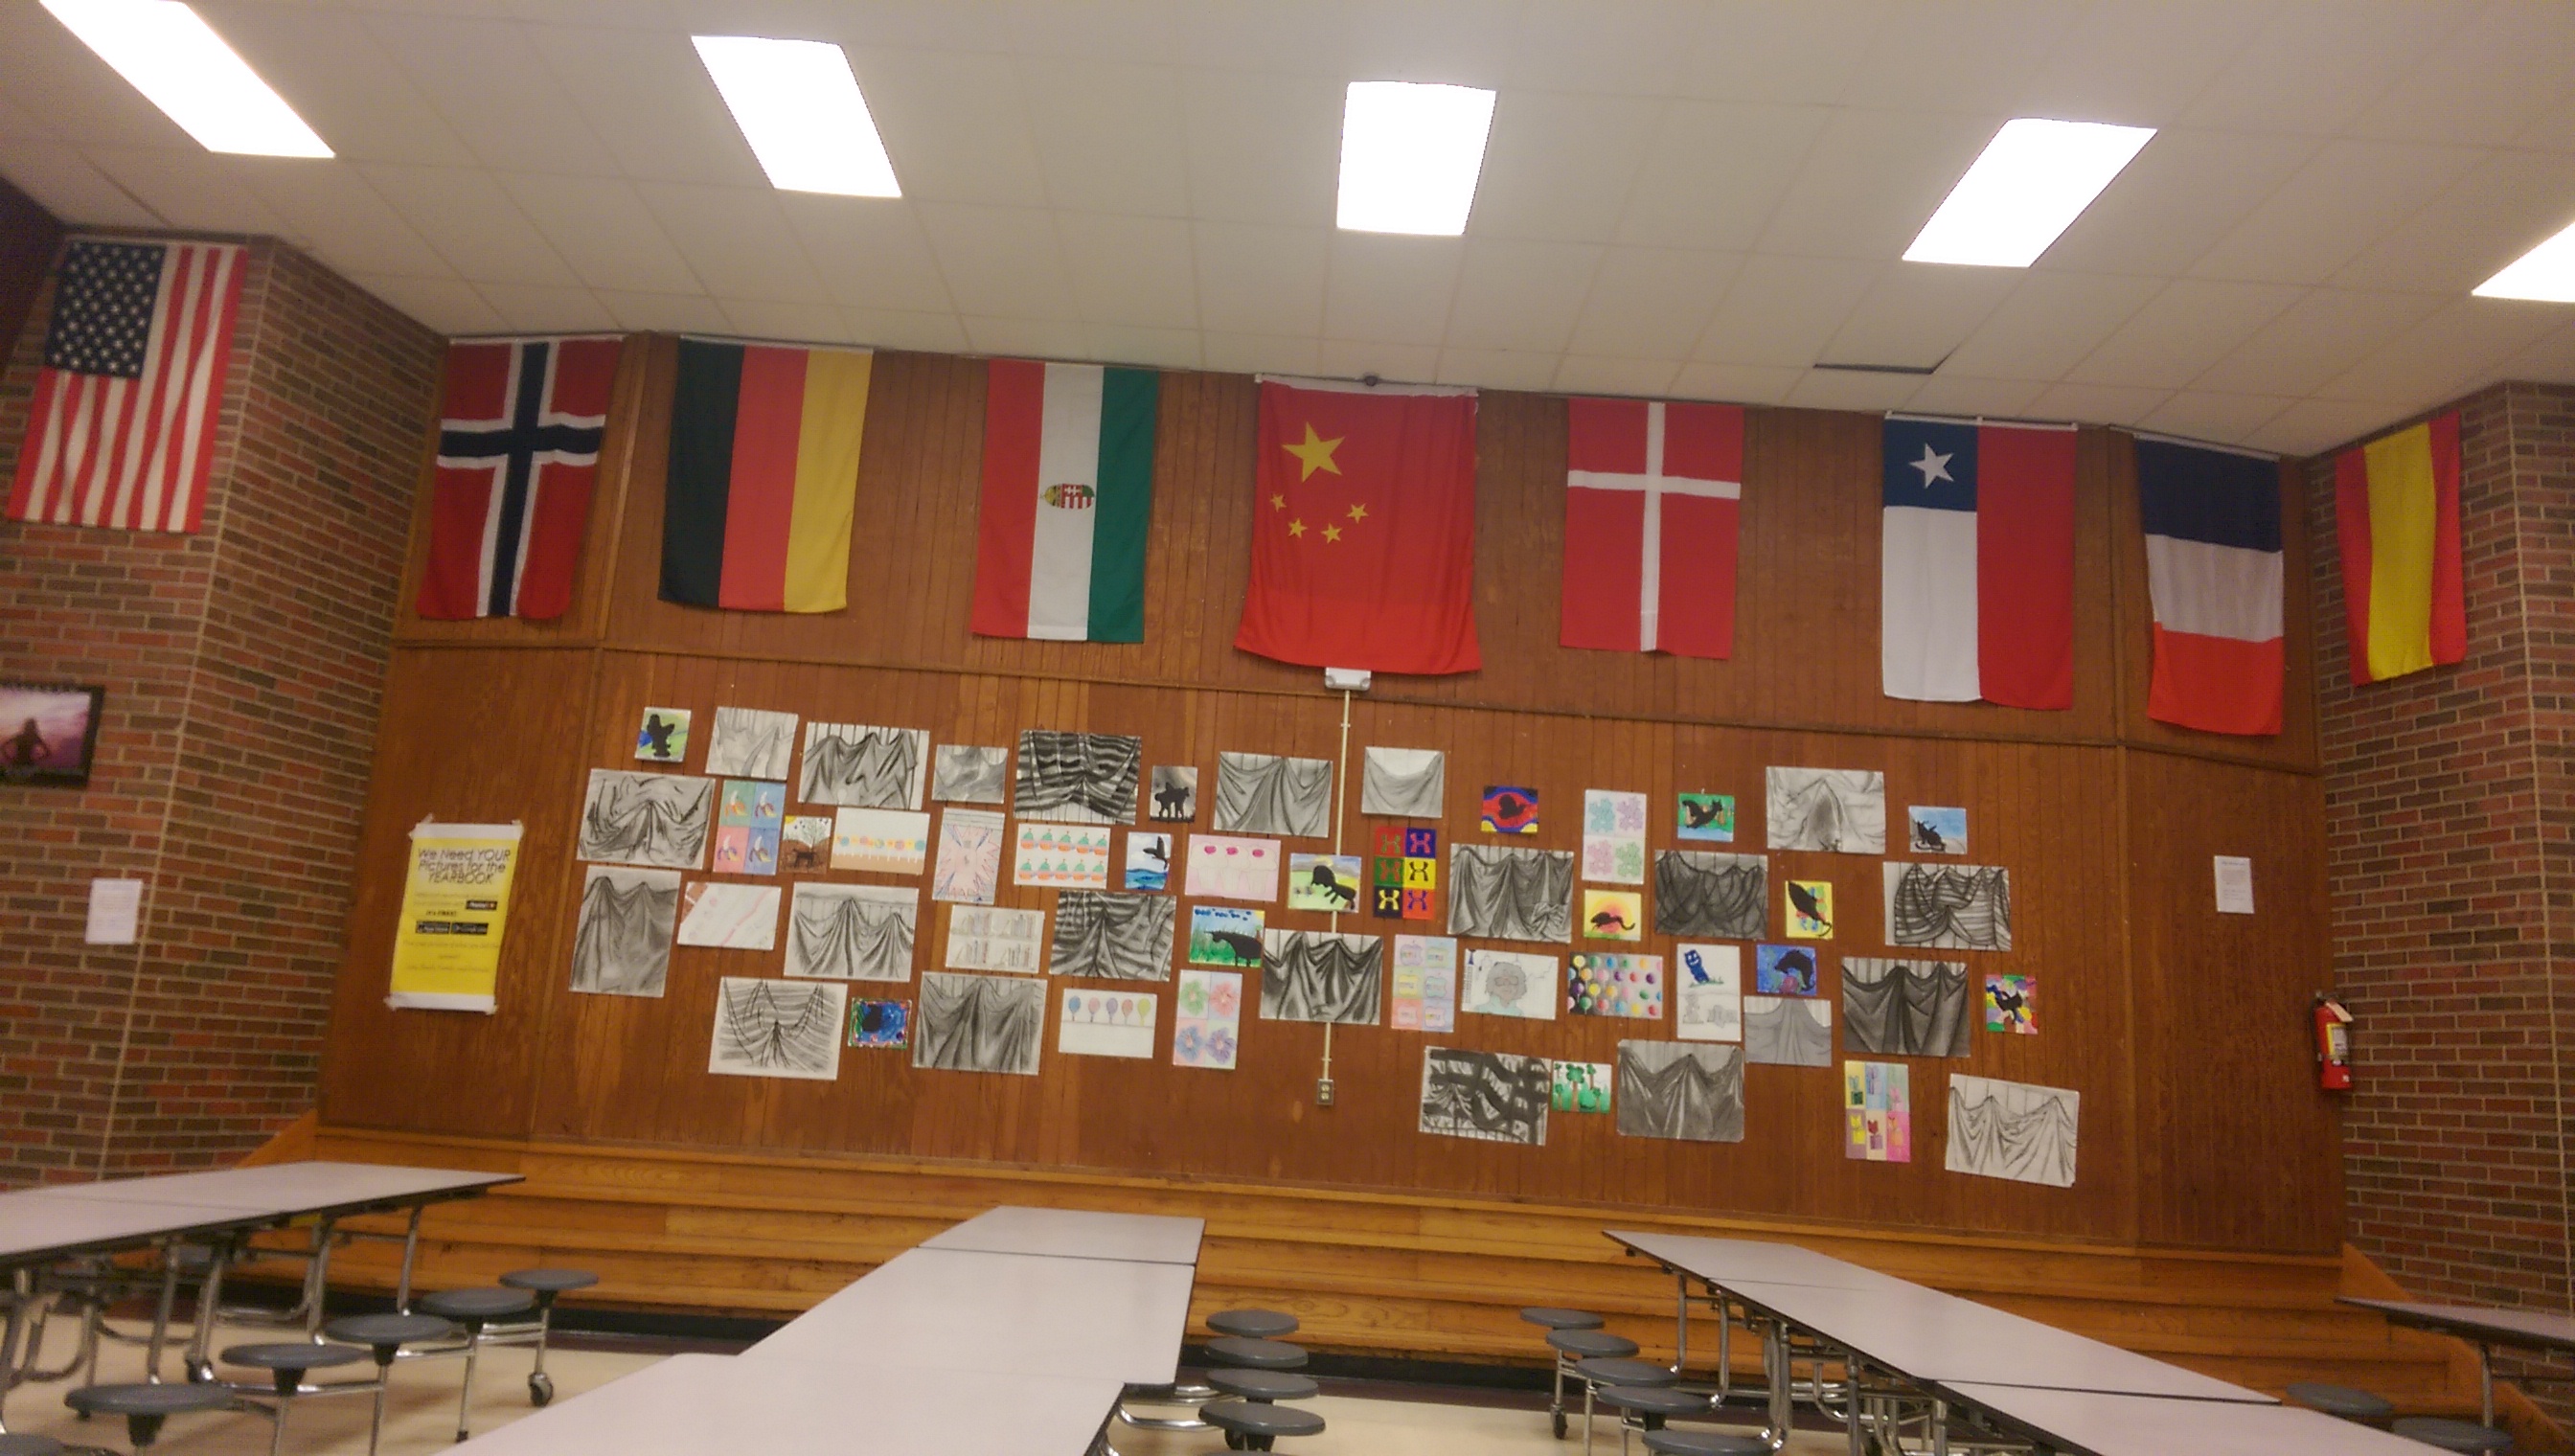 餐厅（公共区）的各国国旗以及学生画作。很高兴瓷国居然给摆中间了2333